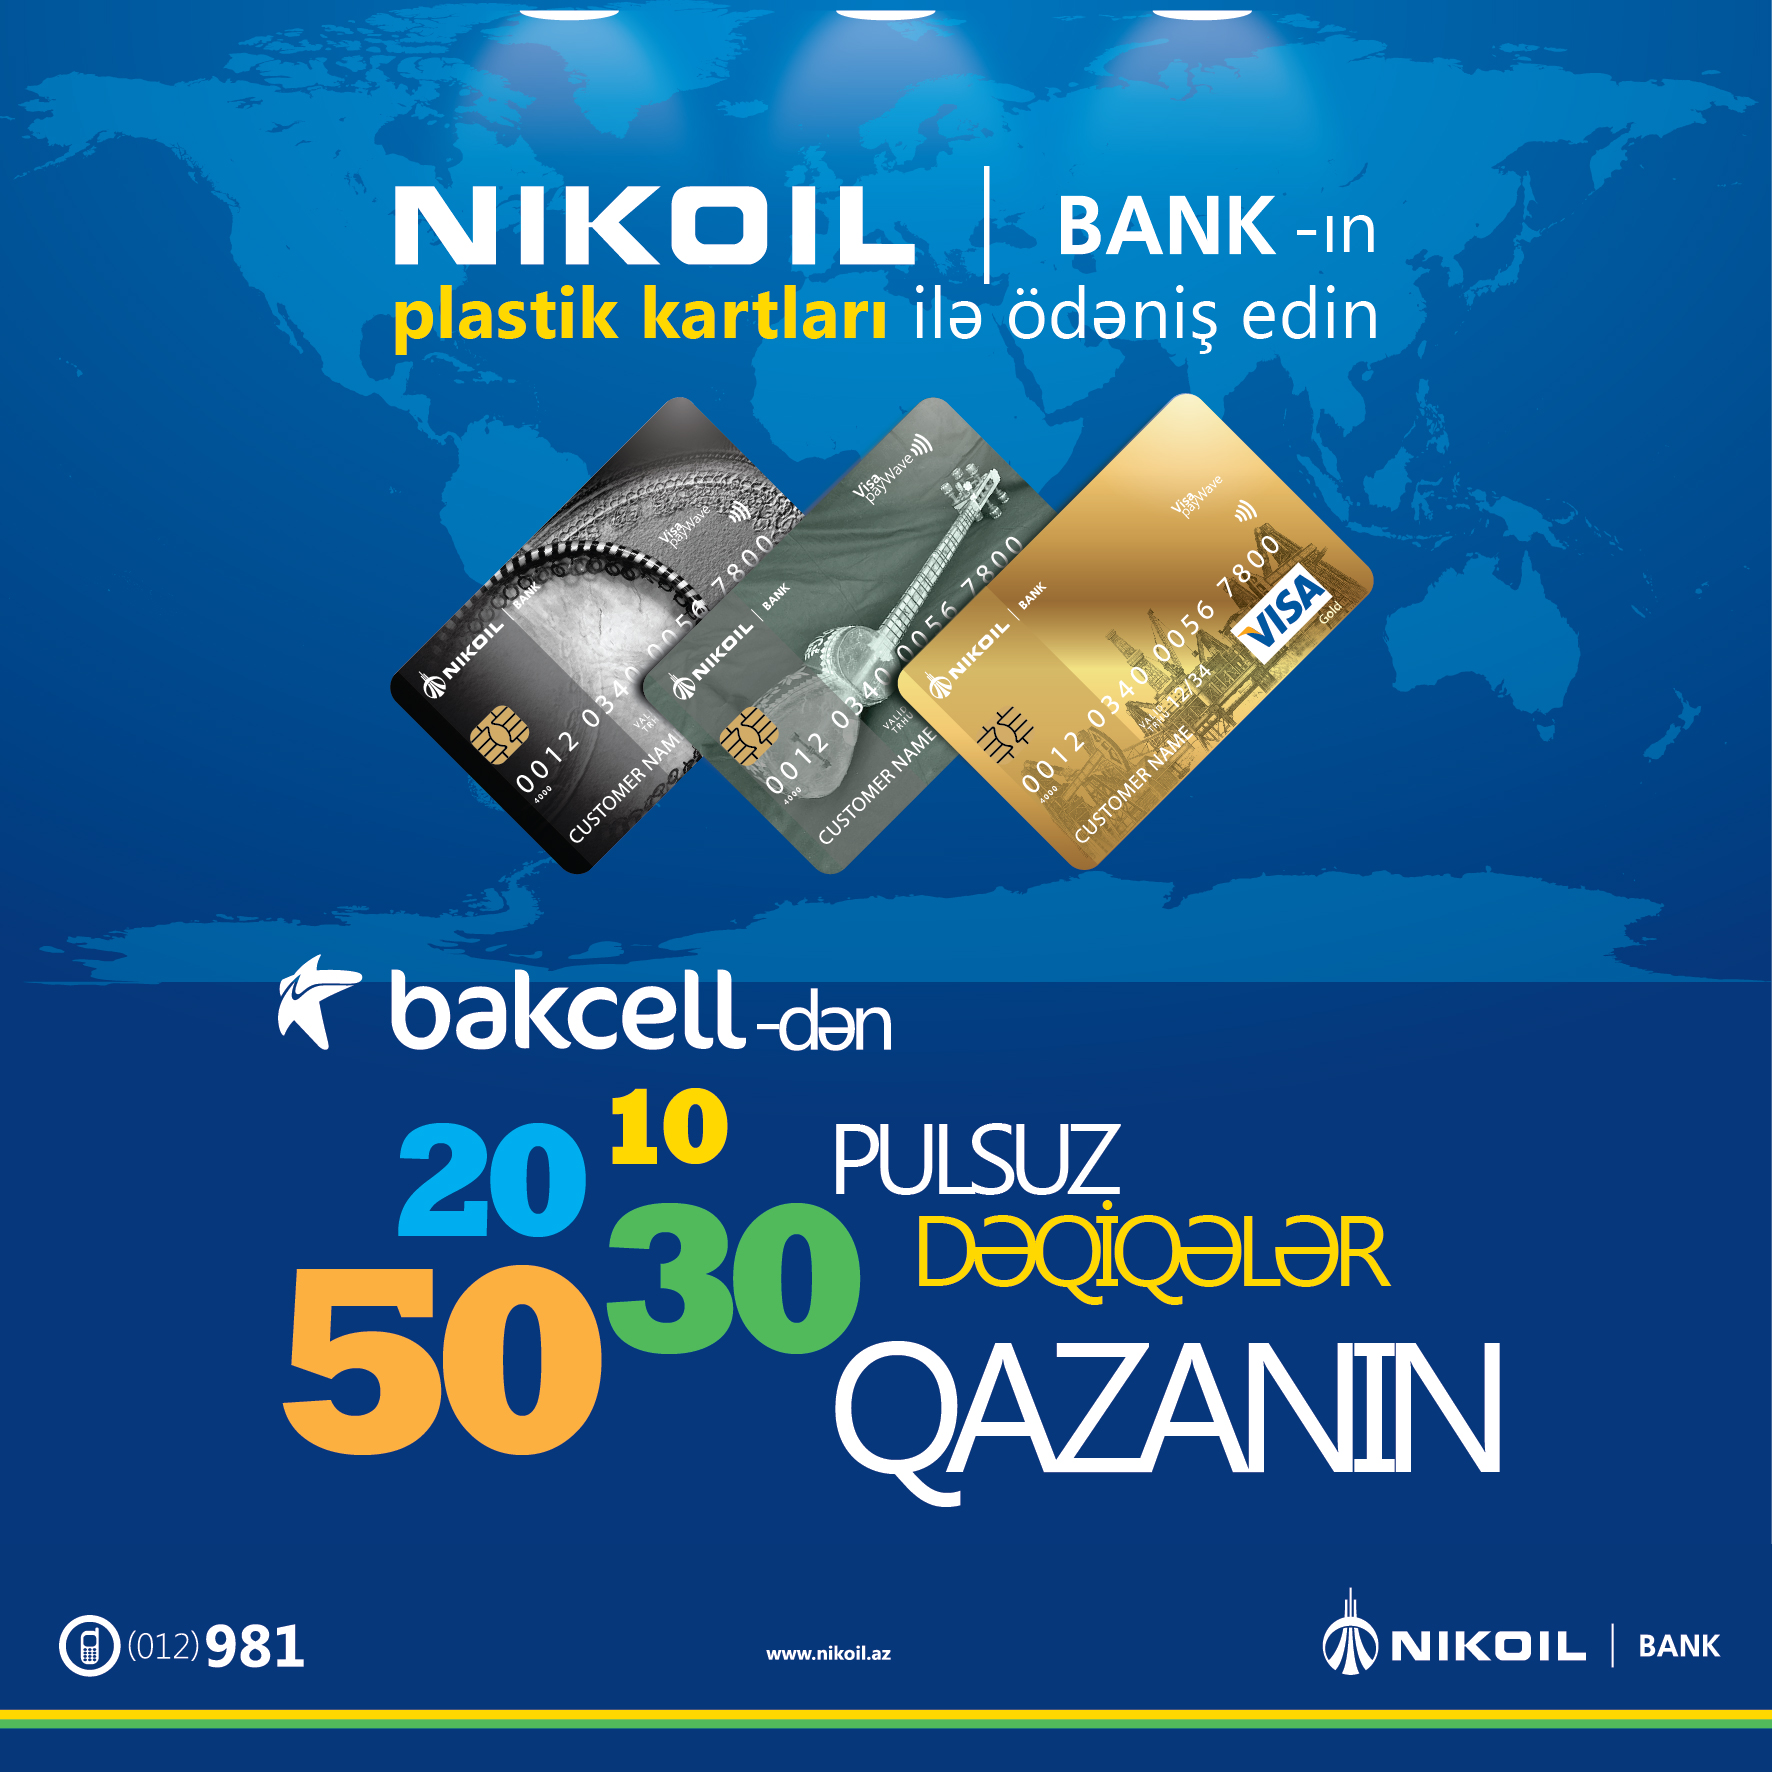 Пользуйтесь пластиковыми картами NIKOIL | Bank-а и получайте в подарок бесплатные минуты разговора!